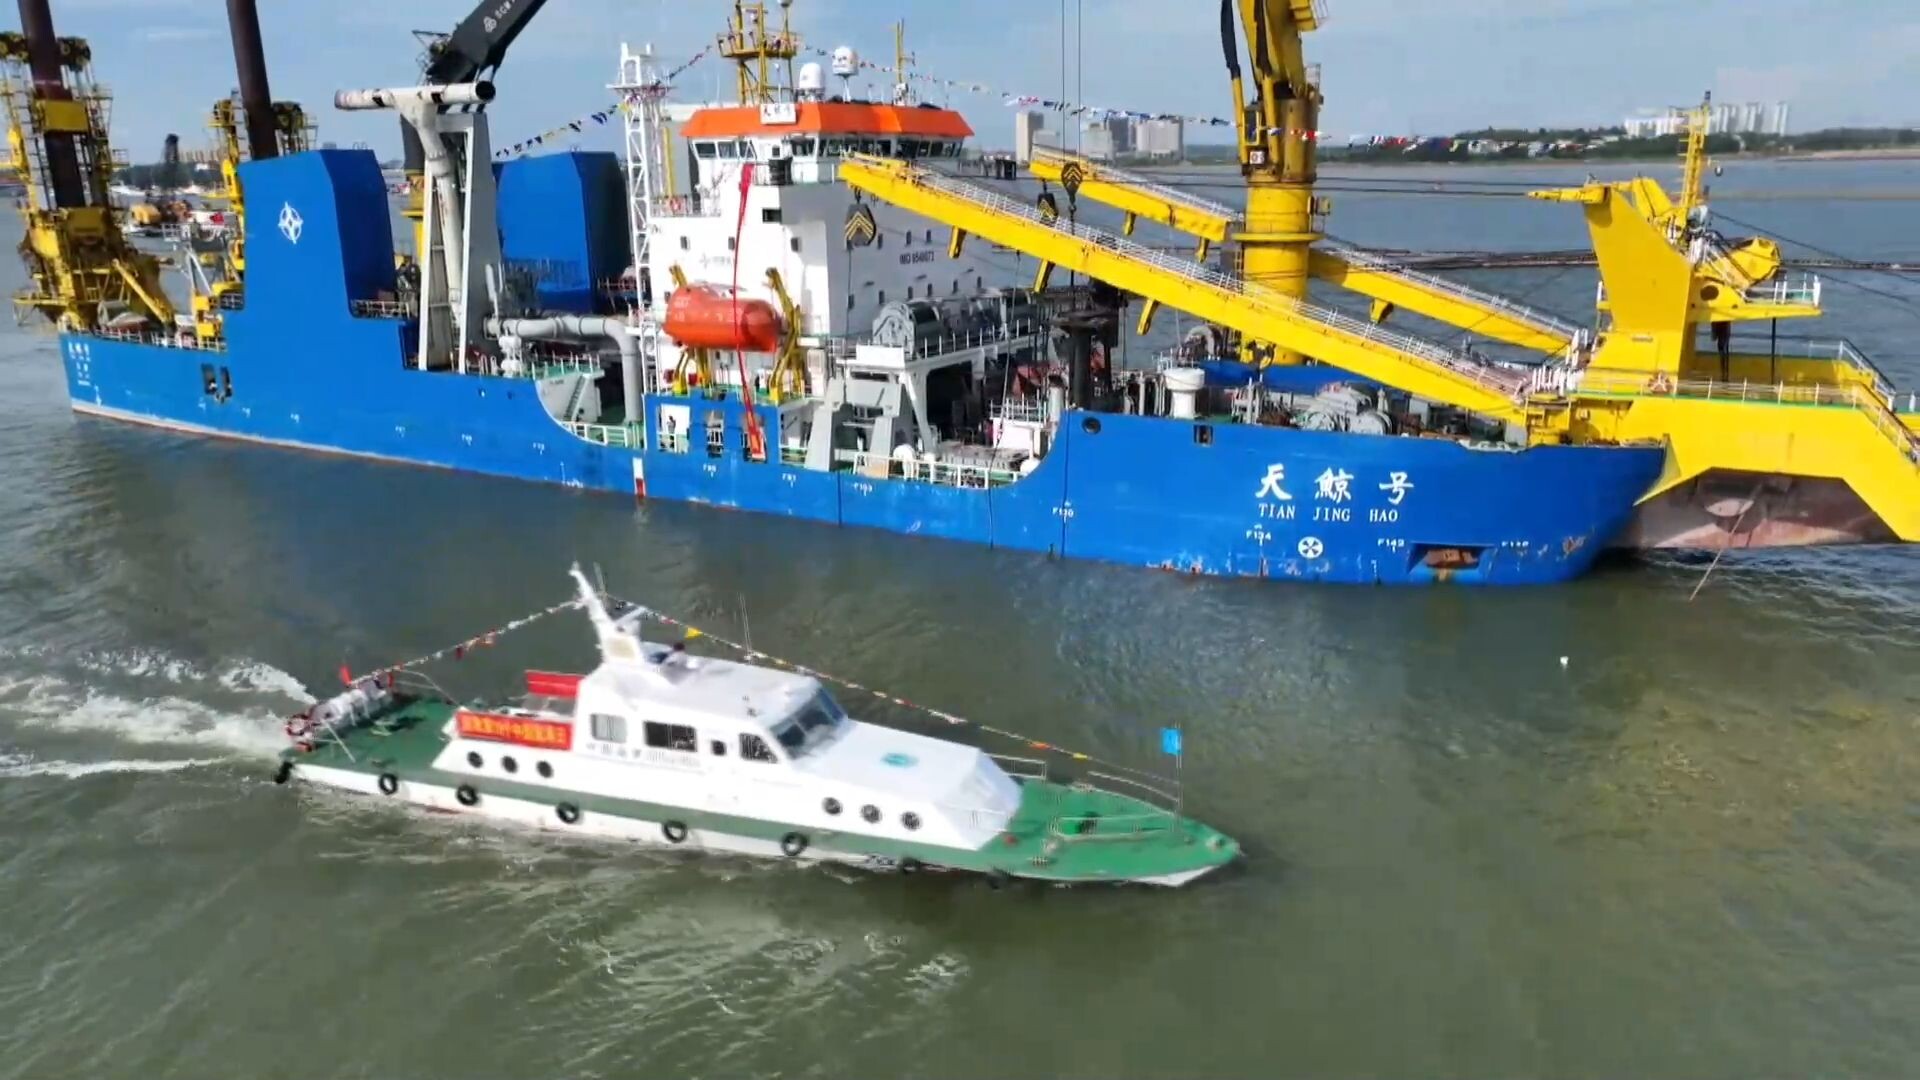 จีนเตรียมใช้ 'เรือขุดลอก' ขนาดใหญ่พิเศษ ช่วยสร้างคลองสายใหม่